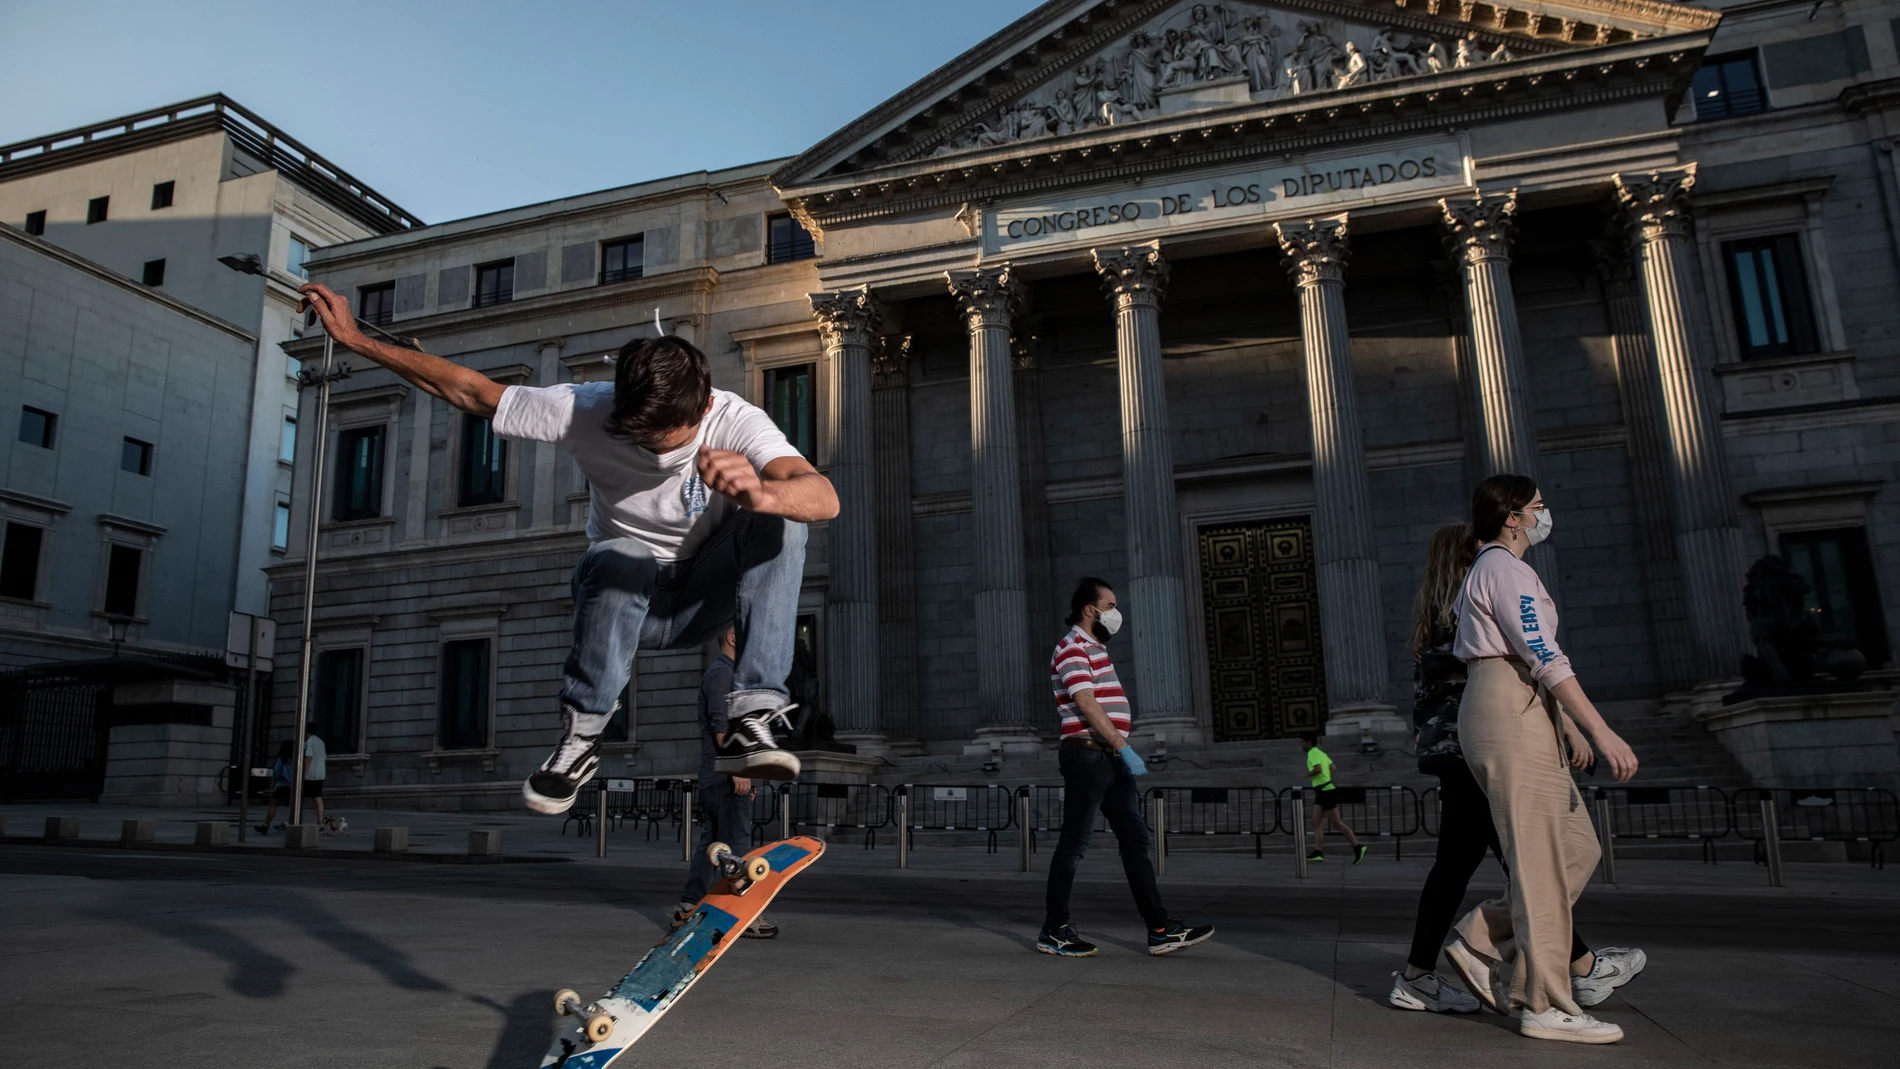 Dos jóvenes practican skate delante del Congreso